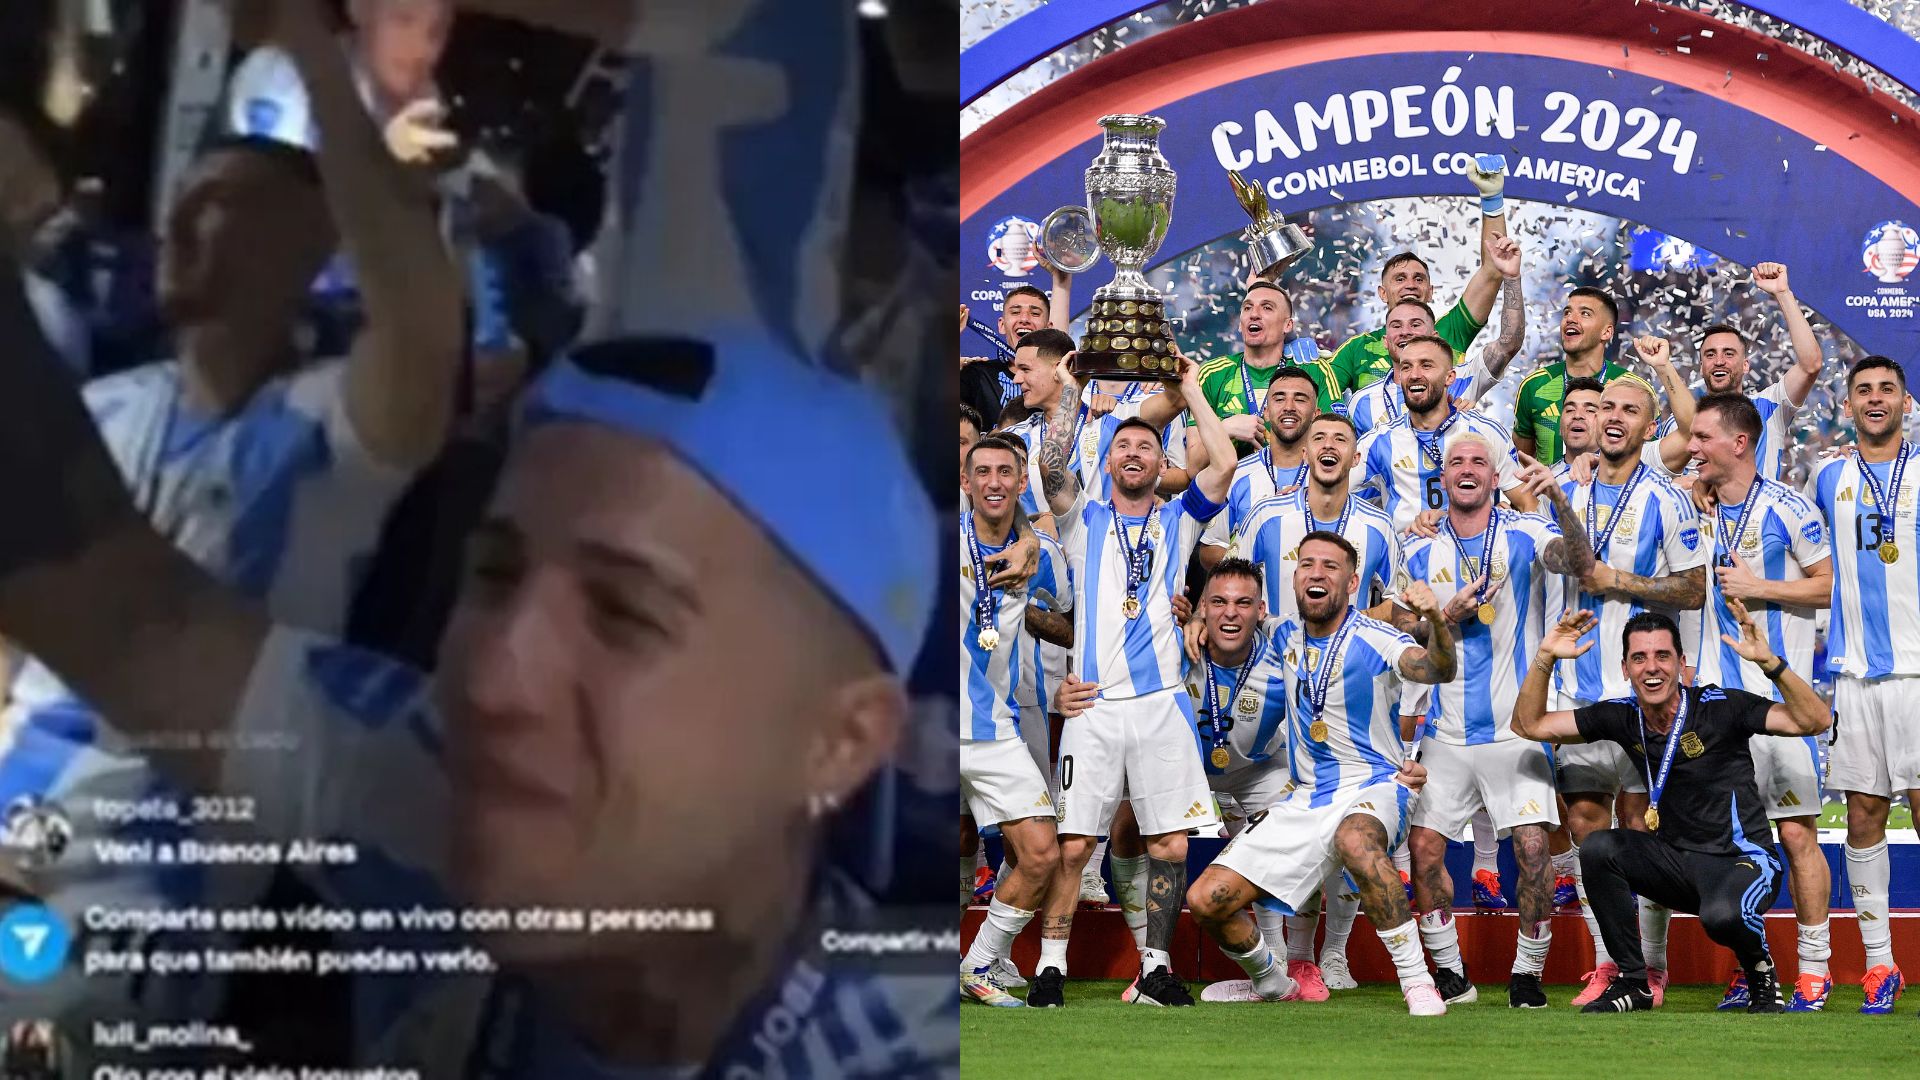 Vídeo: Jogadores da Argentina cantam música racista e transfóbica após conquista do título da Copa América